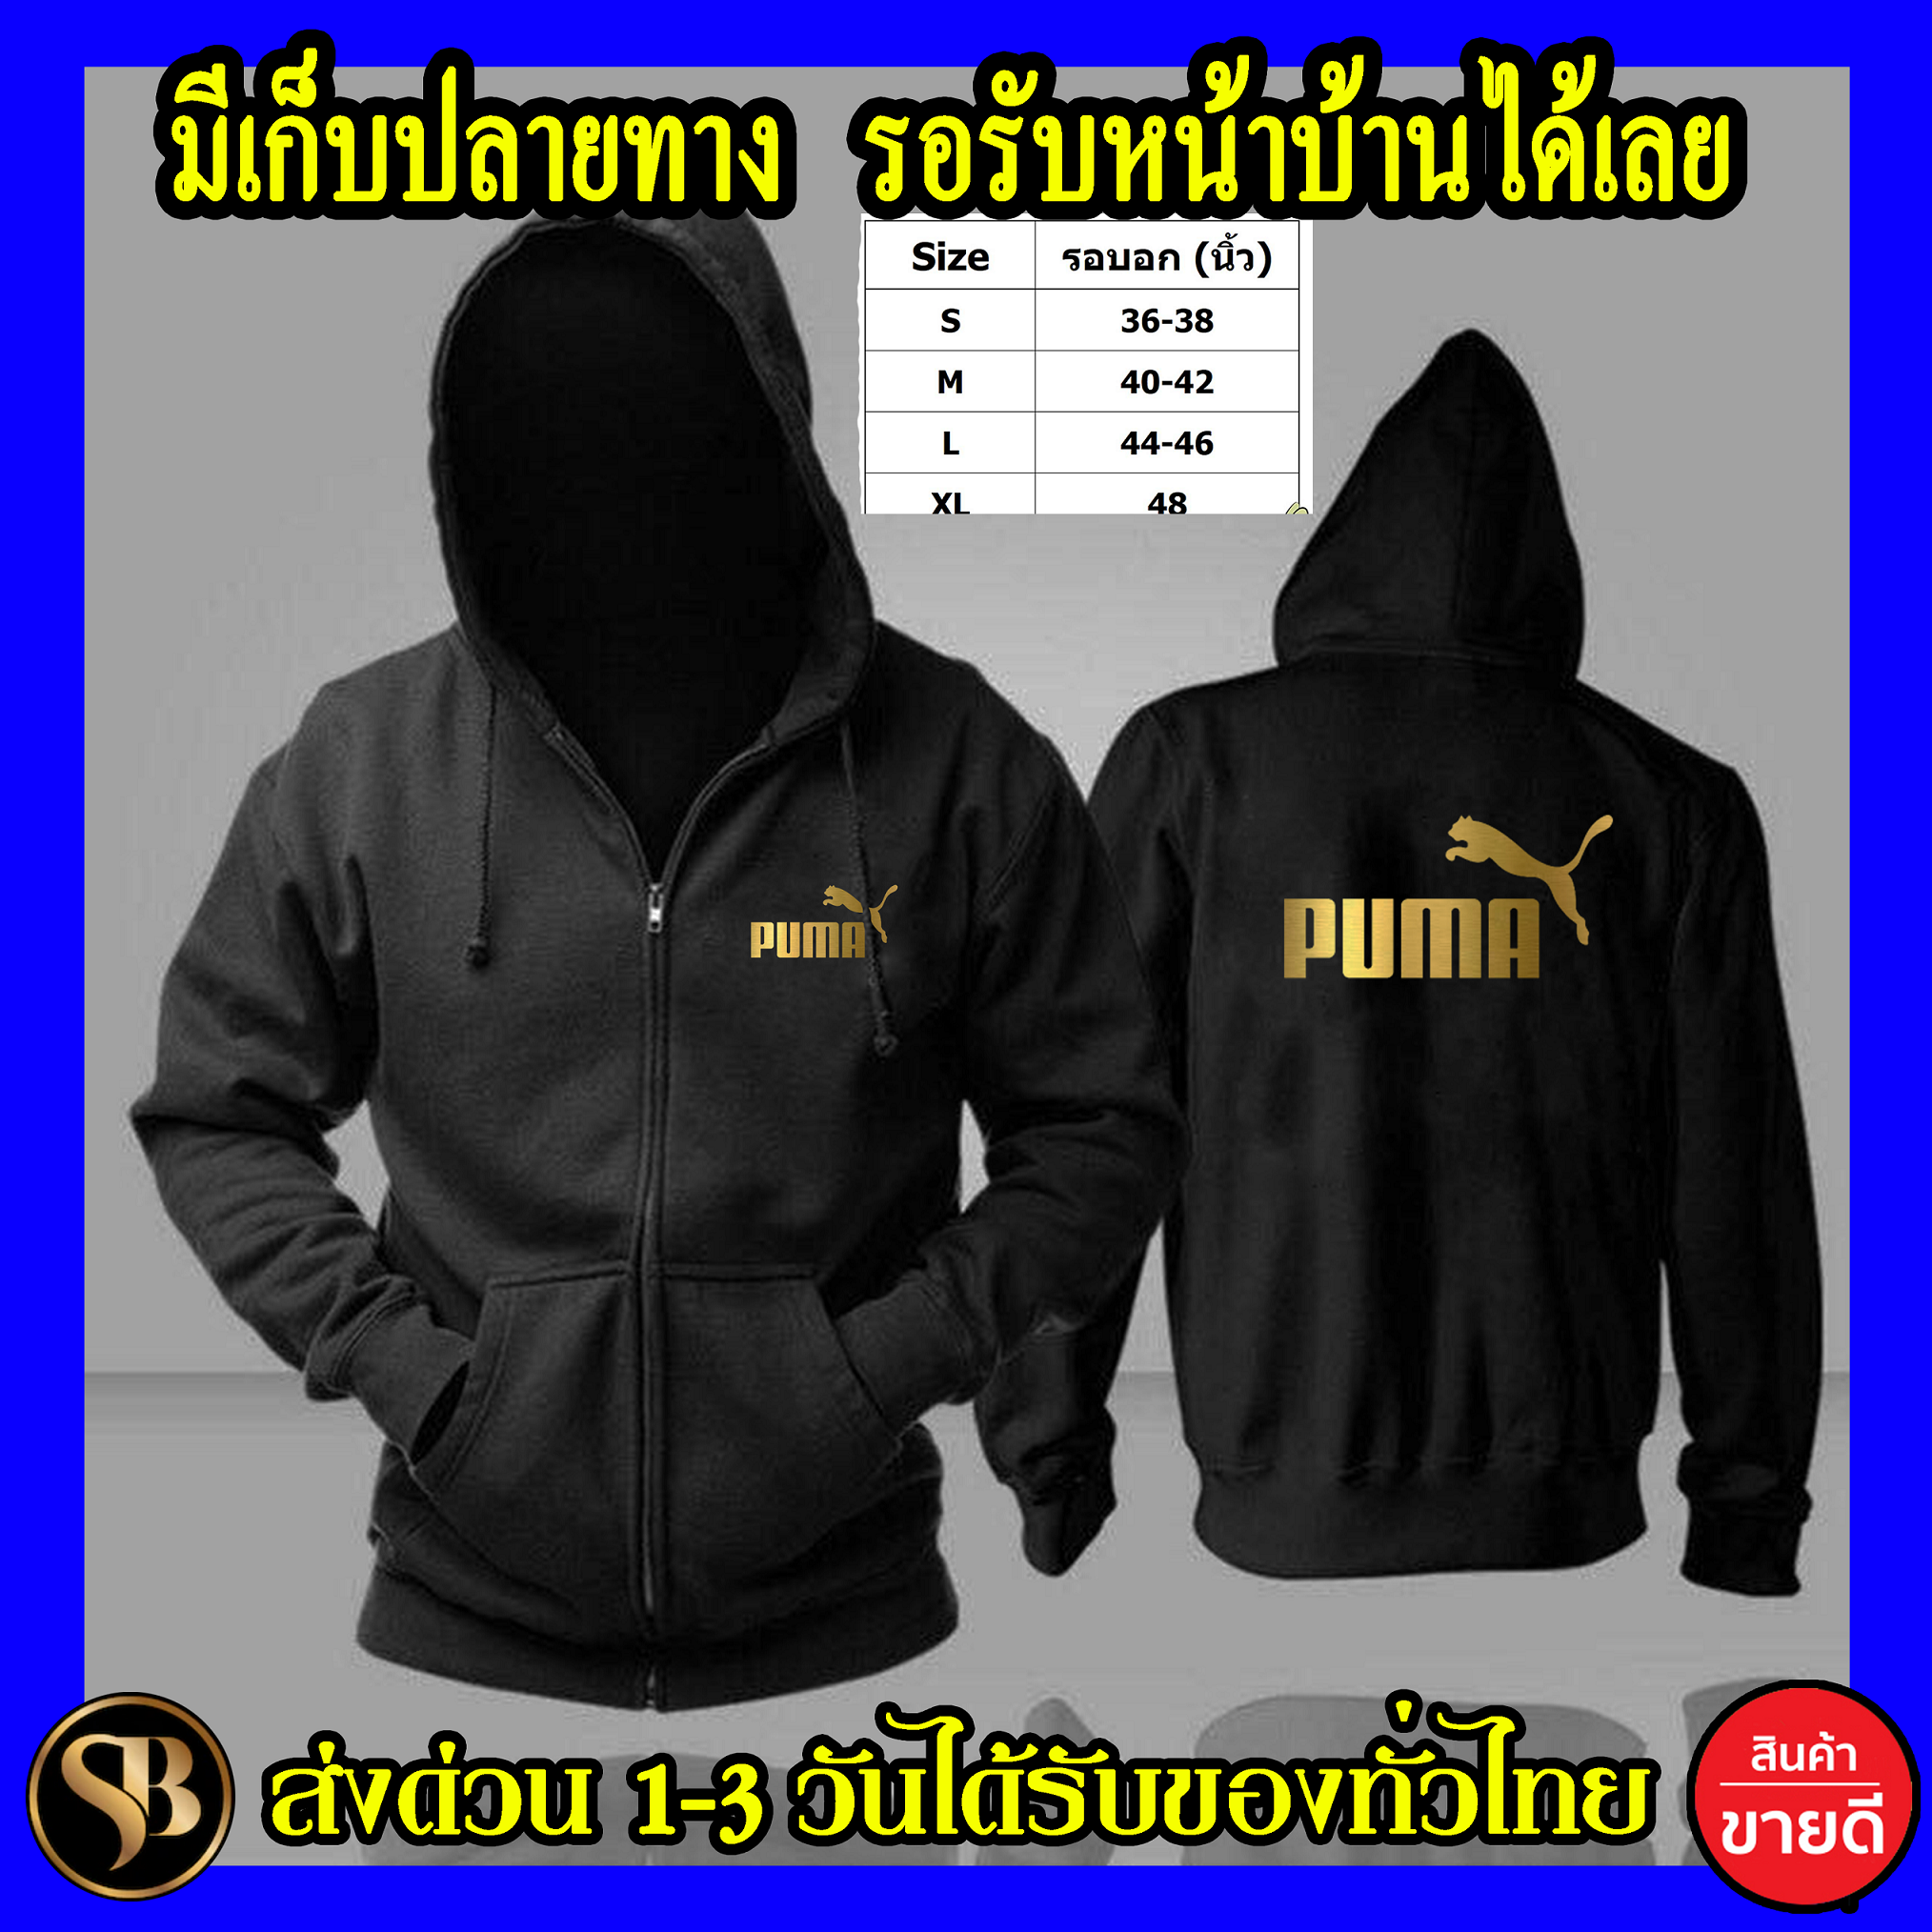 Puma เสื้อฮู้ด ผ้าดี ฮู้ดซิปและสวม เสื้อกันหนาว งานดีแน่นอน หนานุ่มใส่สบาย Hoodie สกรีนเฟล็ก PU ส่งด่วนทั่วไทย